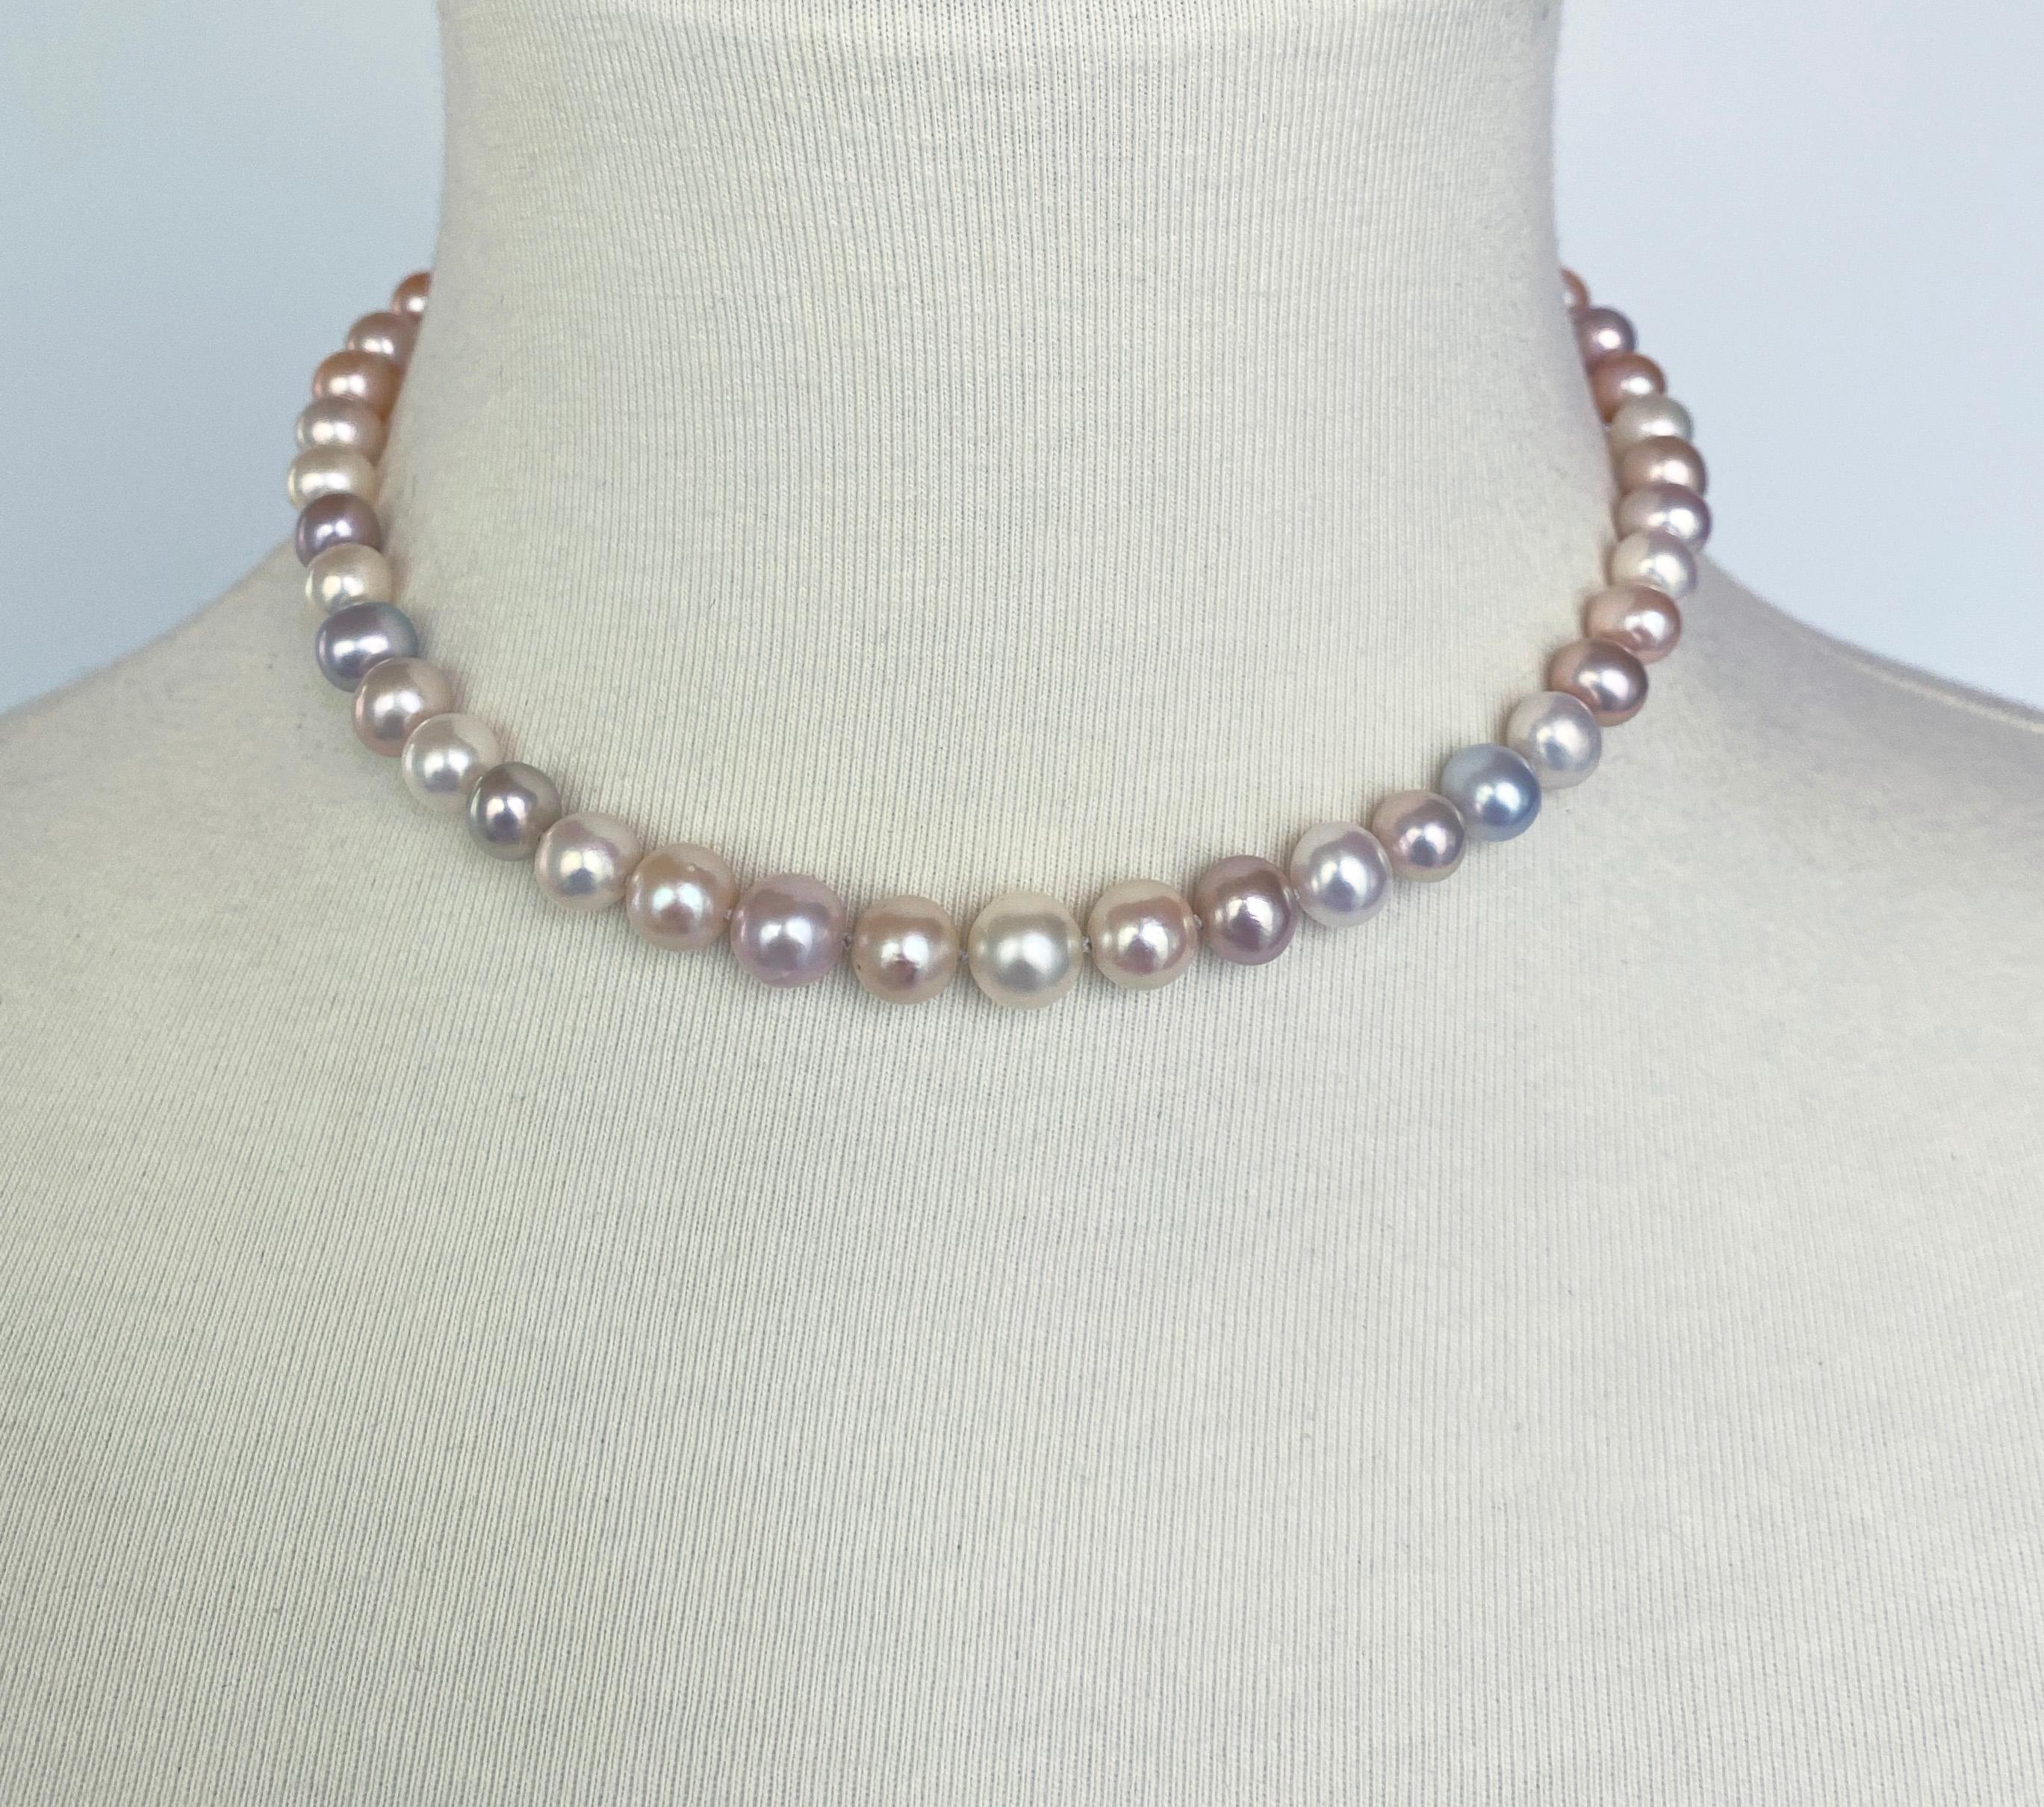 Certains l'aiment simple ! Inspiré par les débutantes des années 1950, ce magnifique collier de perles multicolores est composé de perles brillantes légèrement graduées présentant des nuances de rose, bleu, violet, vert et jaune. Doublement noué, ce